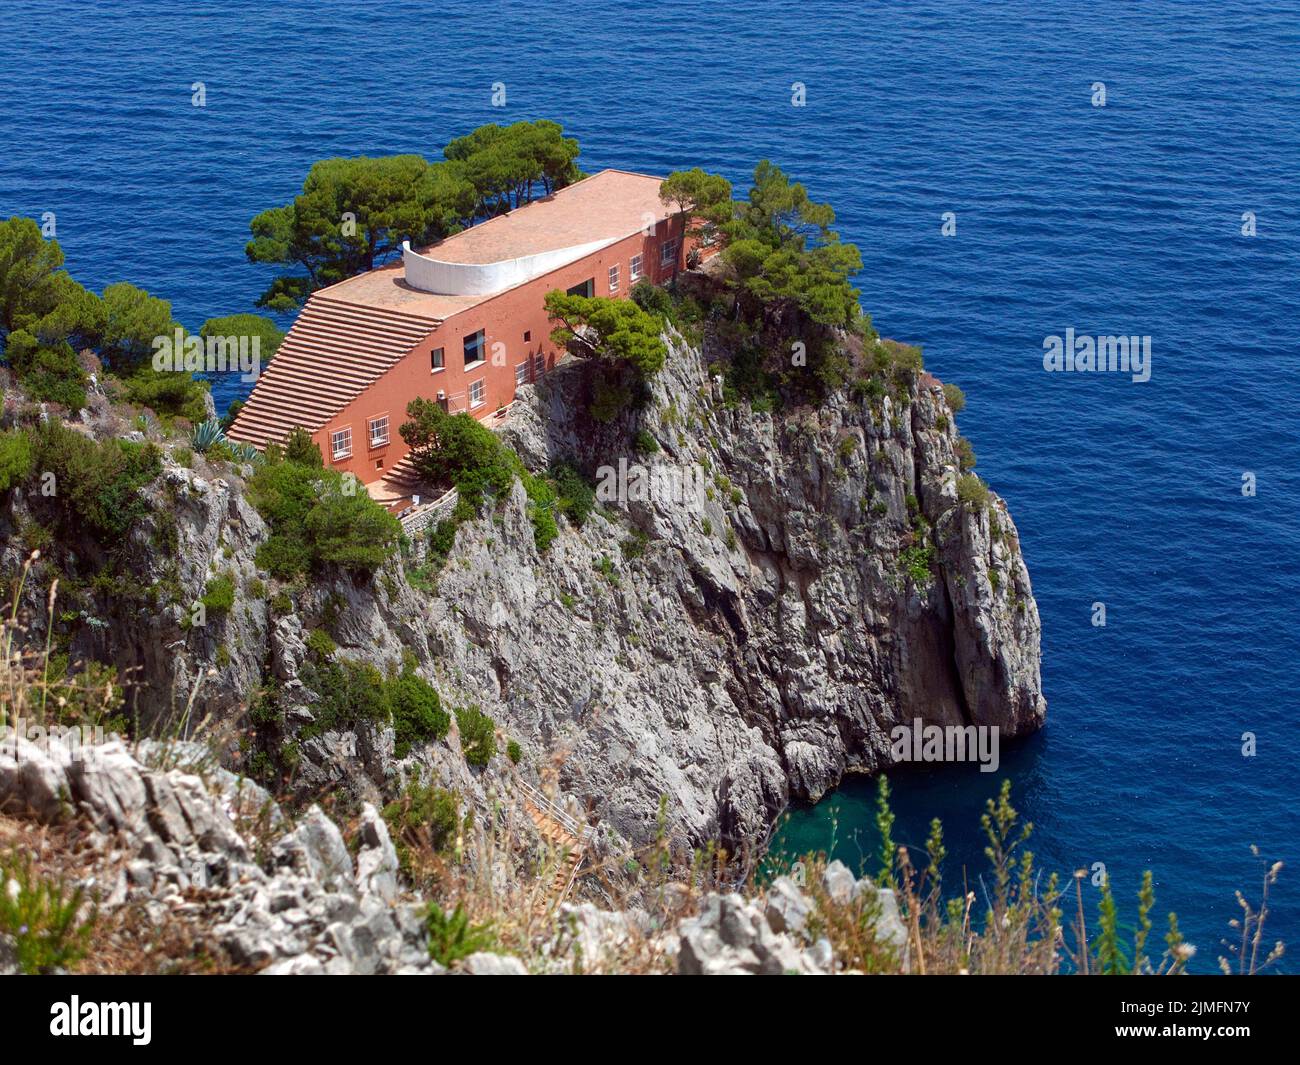 Vista sobre Villa Malaparte (Casa Come Me), el arquitecto Adalberto Libera diseñó esta villa para el escritor Curzio Malaparte, en la isla de Capri, Italia Foto de stock